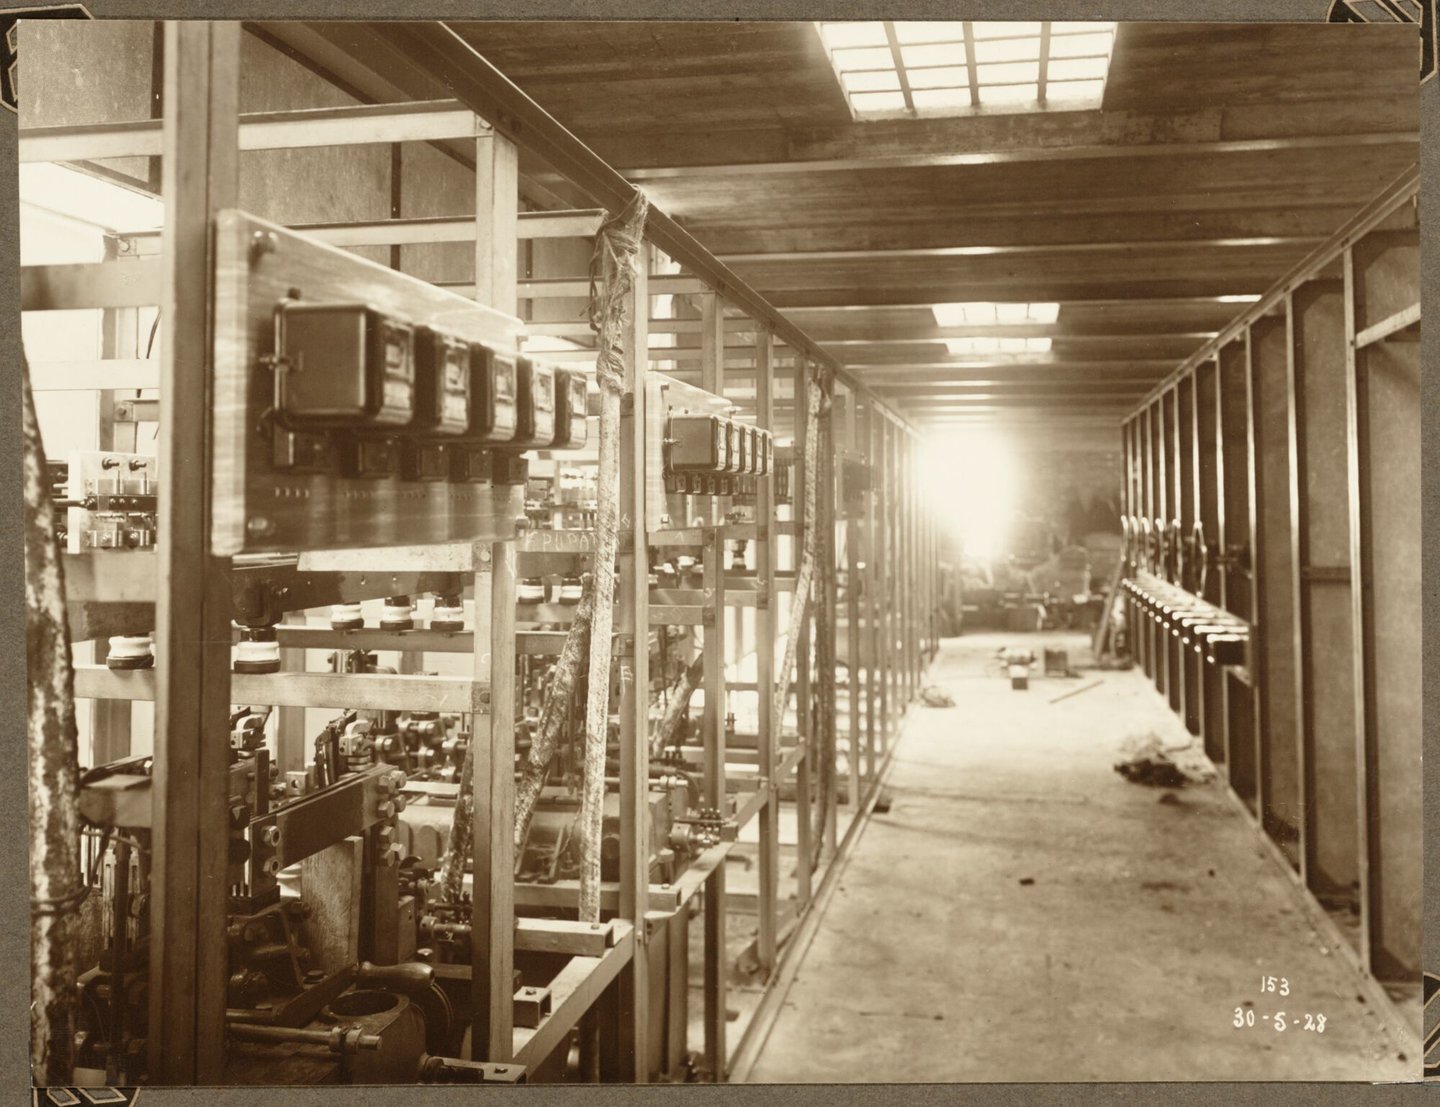 Bouw van transformatorenoverspanning van ammoniakfabriek van cokesfabriek Kuhlmann in Zelzate